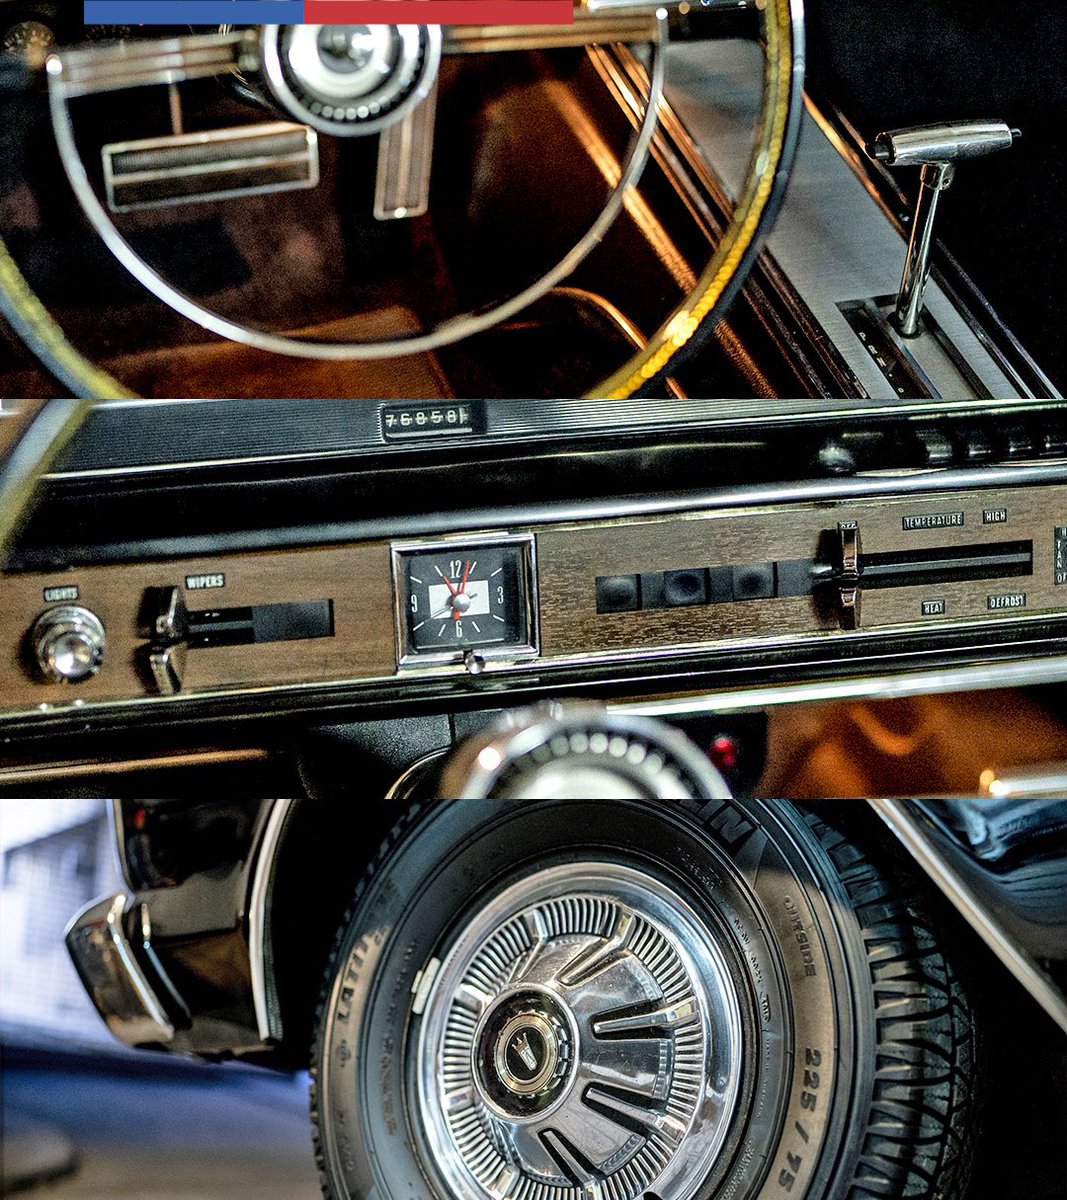 El Ford Galaxie 500 XL lleva 54 años siendo el vehículo oficial de la Presidencia de la República. En la #CuentaPública2024, el Presidente @GabrielBoric llegará nuevamente en el vehículo al Salón de Honor del Congreso Nacional; una tradición y parte del patrimonio de Chile.